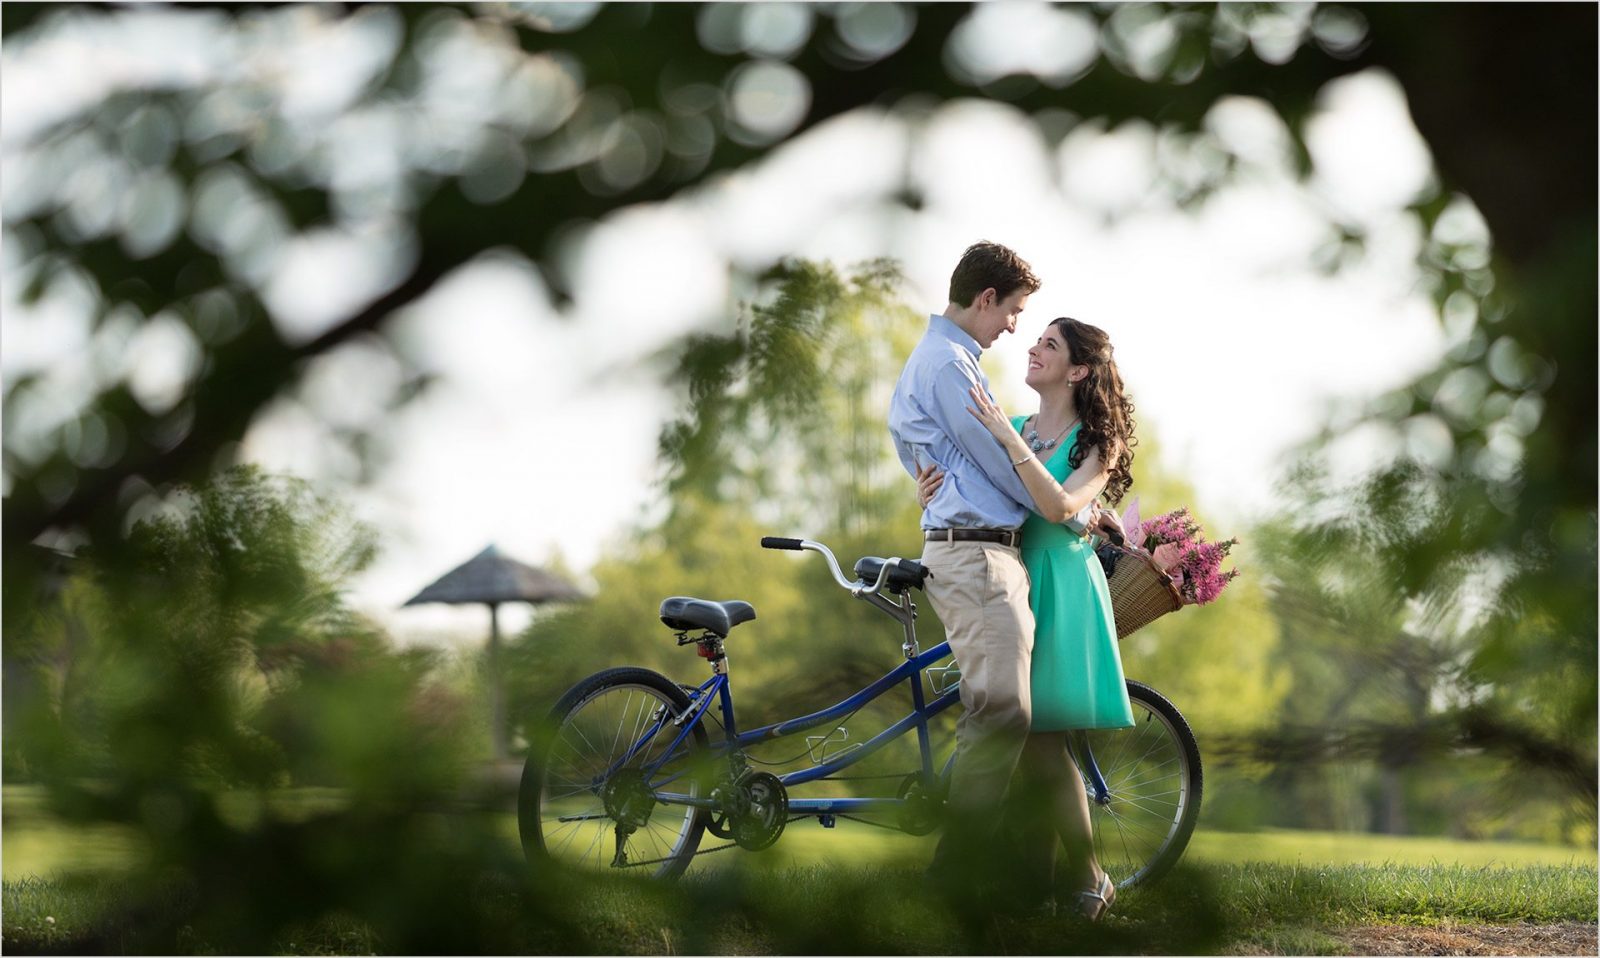 Cox Arboretum Dayton Ohio bike engagement couple